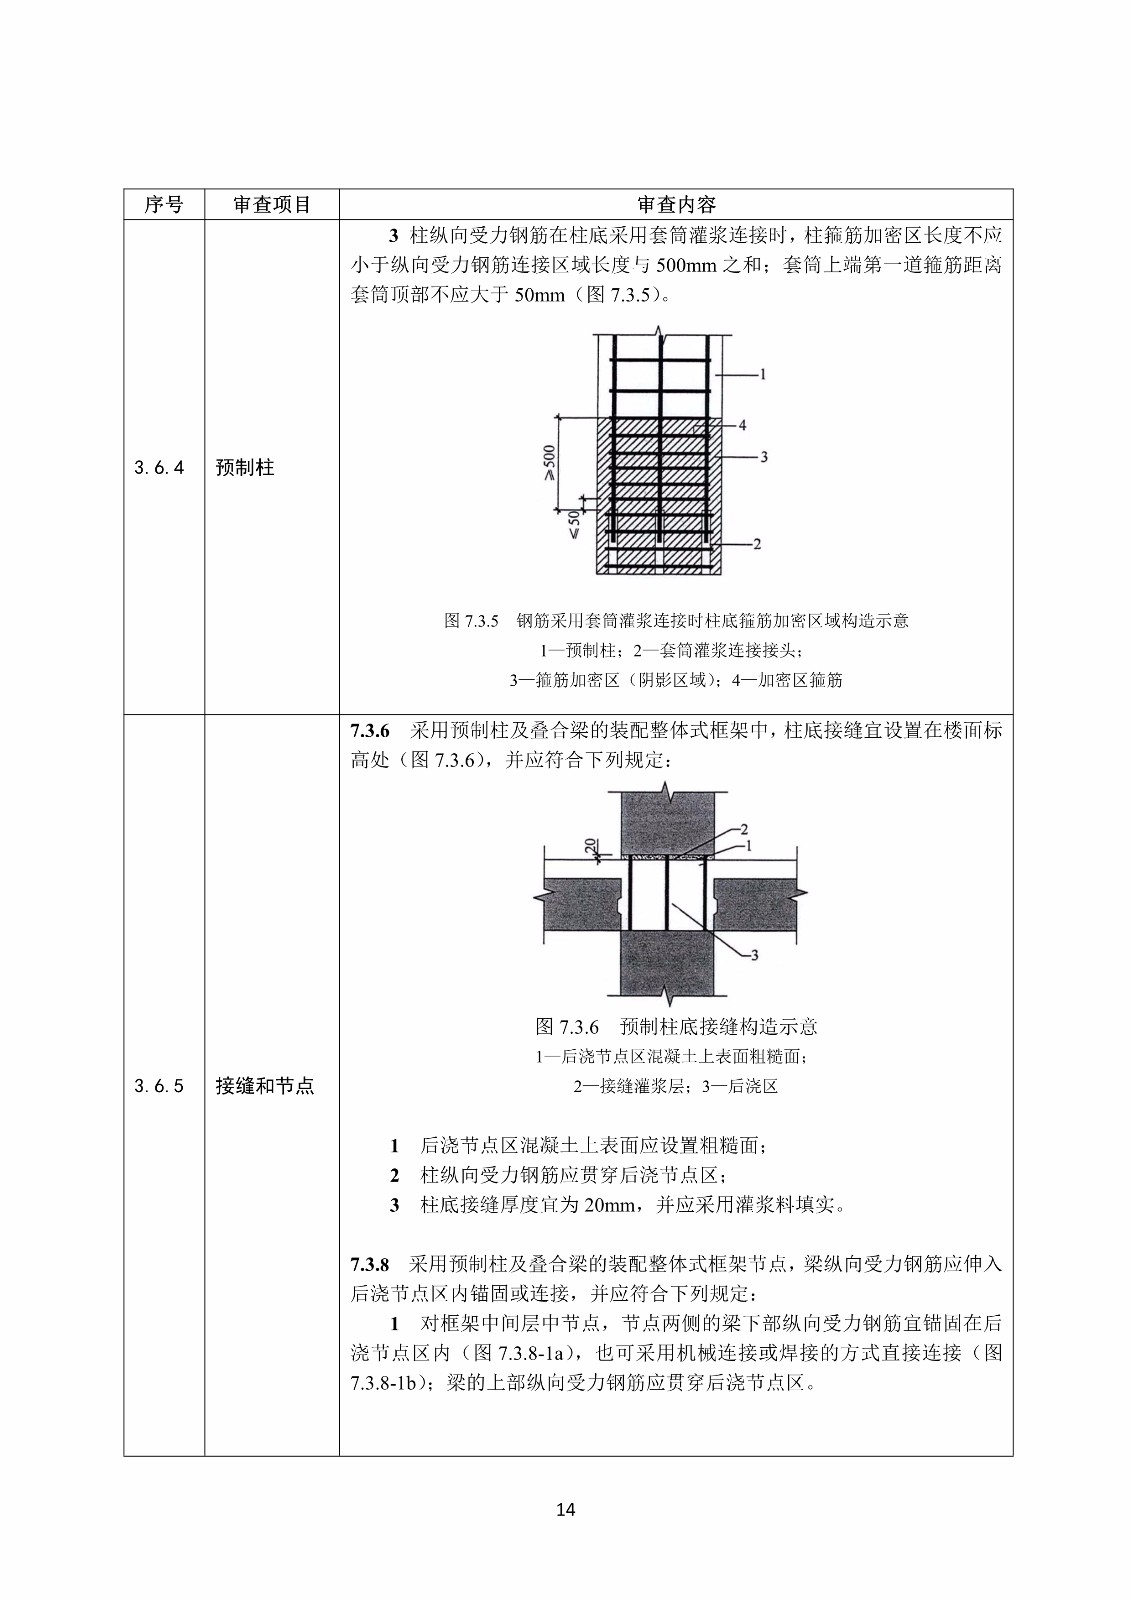 装配式混凝土结构建筑工程施工图设计文件技术审查要点_18.jpg